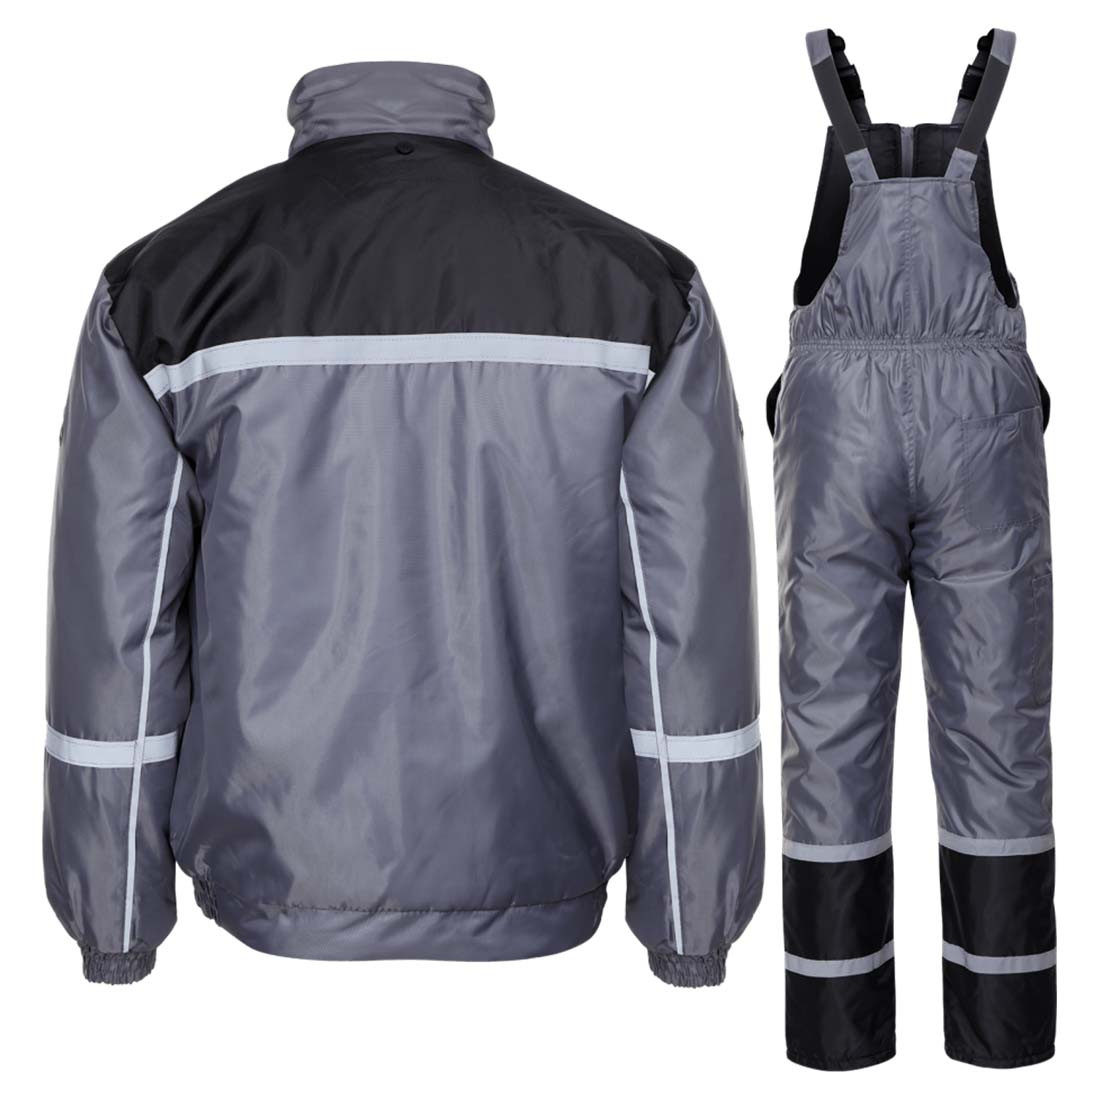 Collins Winter Work Suit - Safetywear